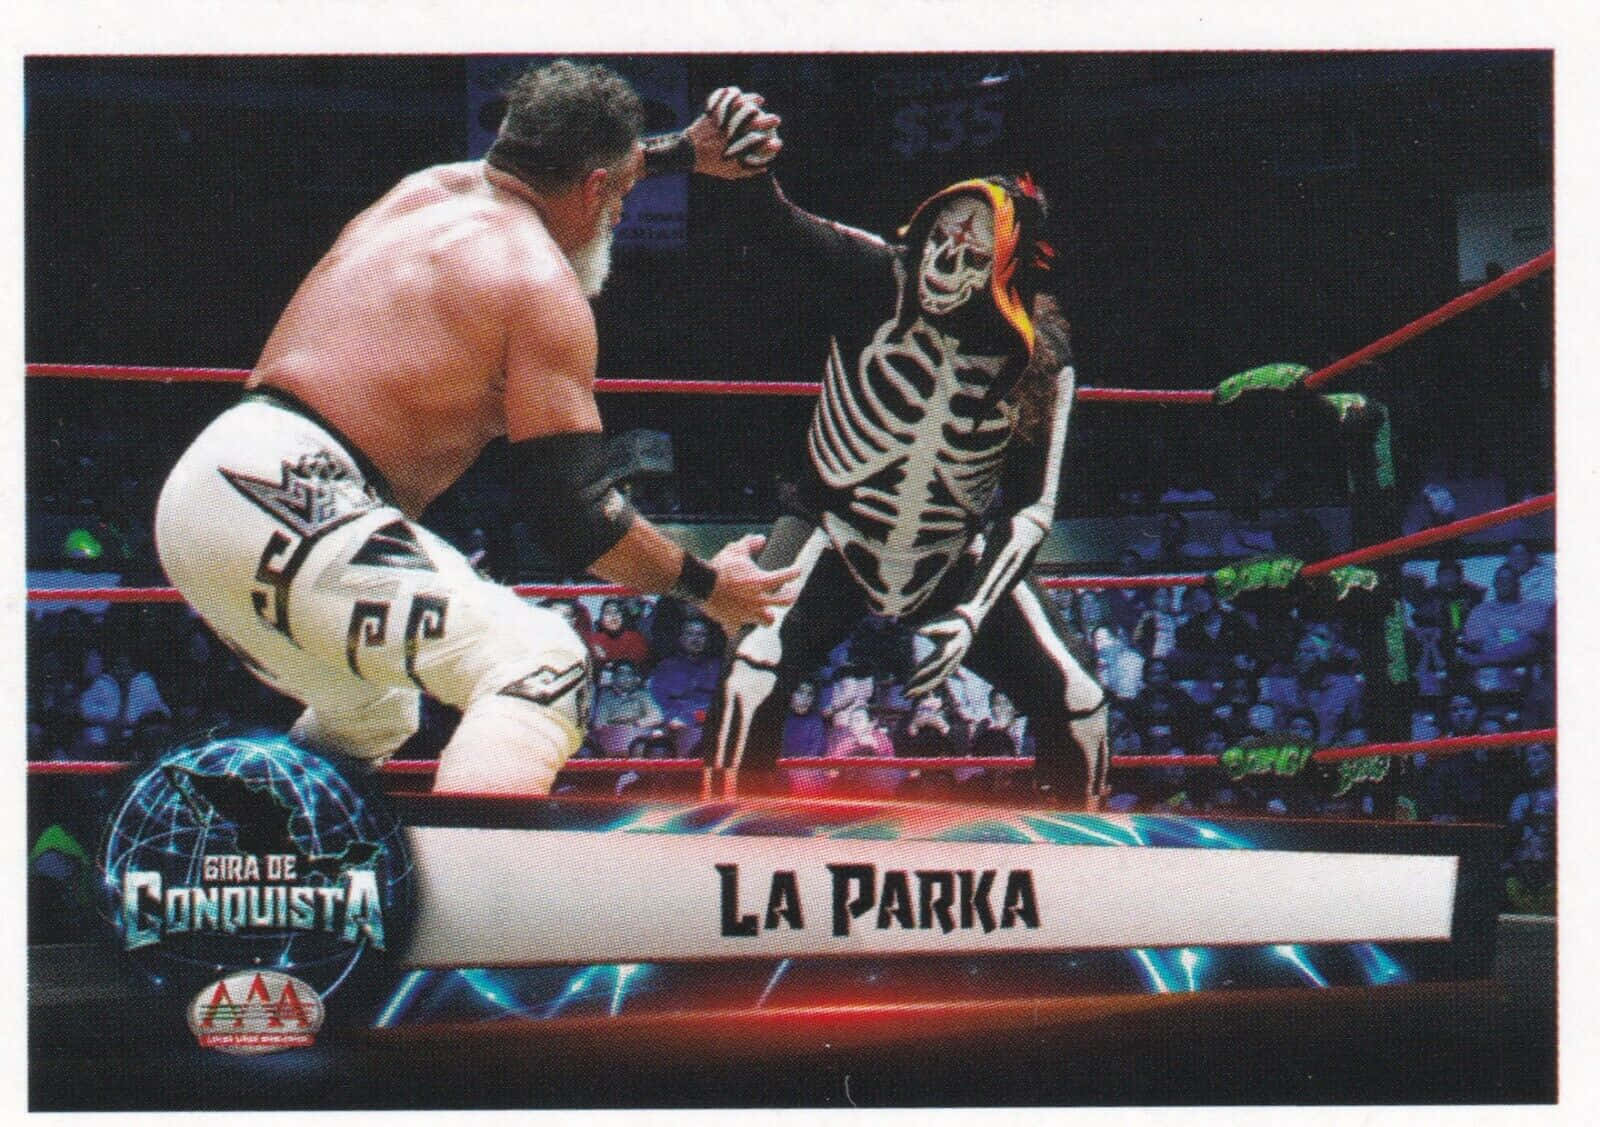 La Parka Aaa Wrestling Match Wallpaper